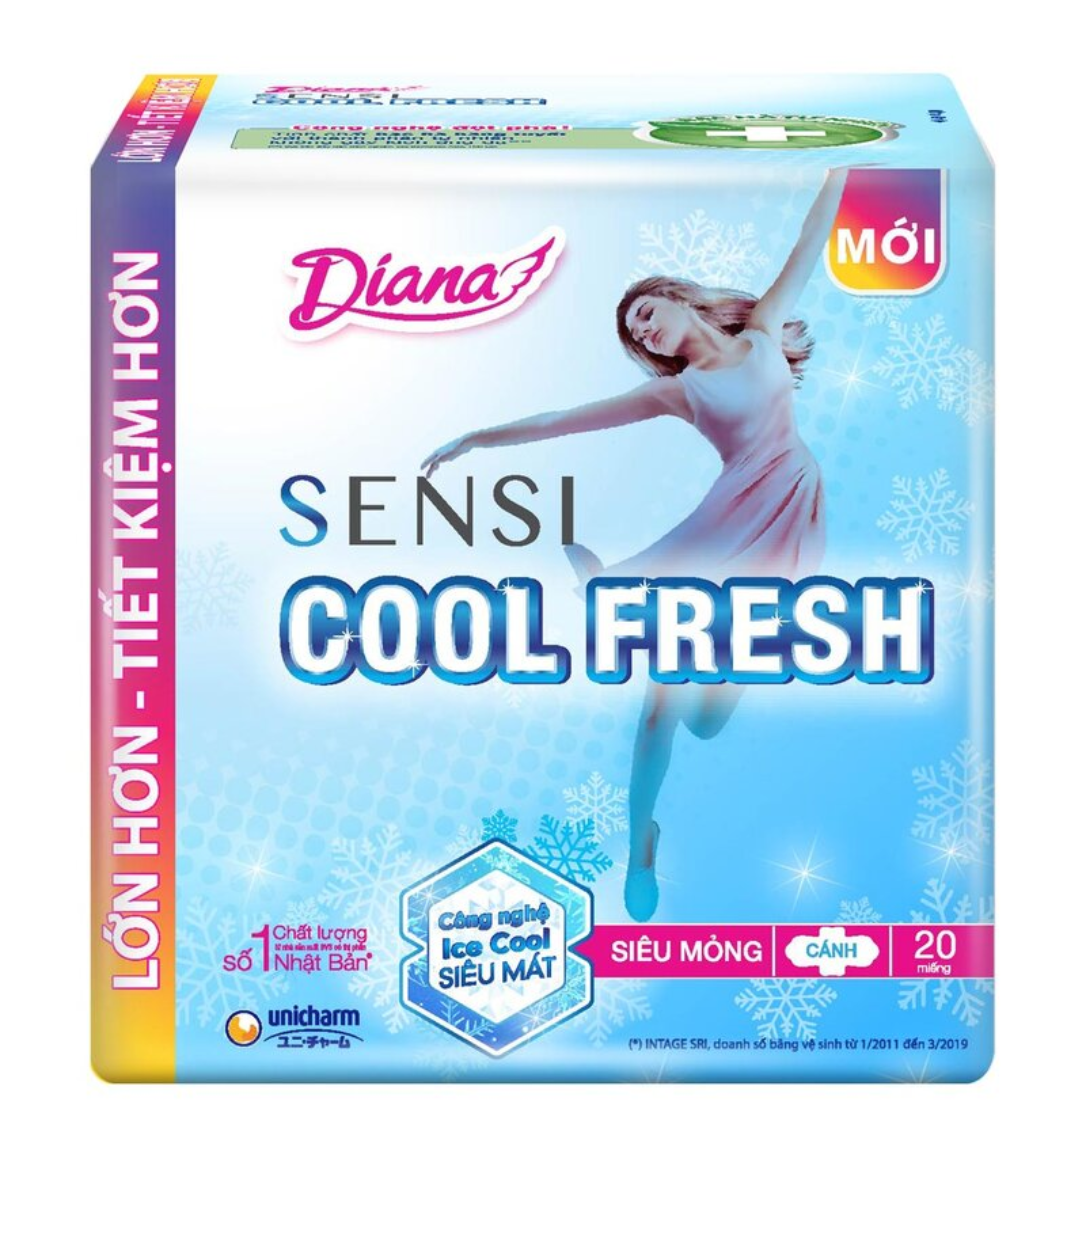 (4 gói tặng bình) Băng vệ sinh Diana Sensi Cool fresh / khô thoáng mỏng cánh 20 miếng nhập khẩu